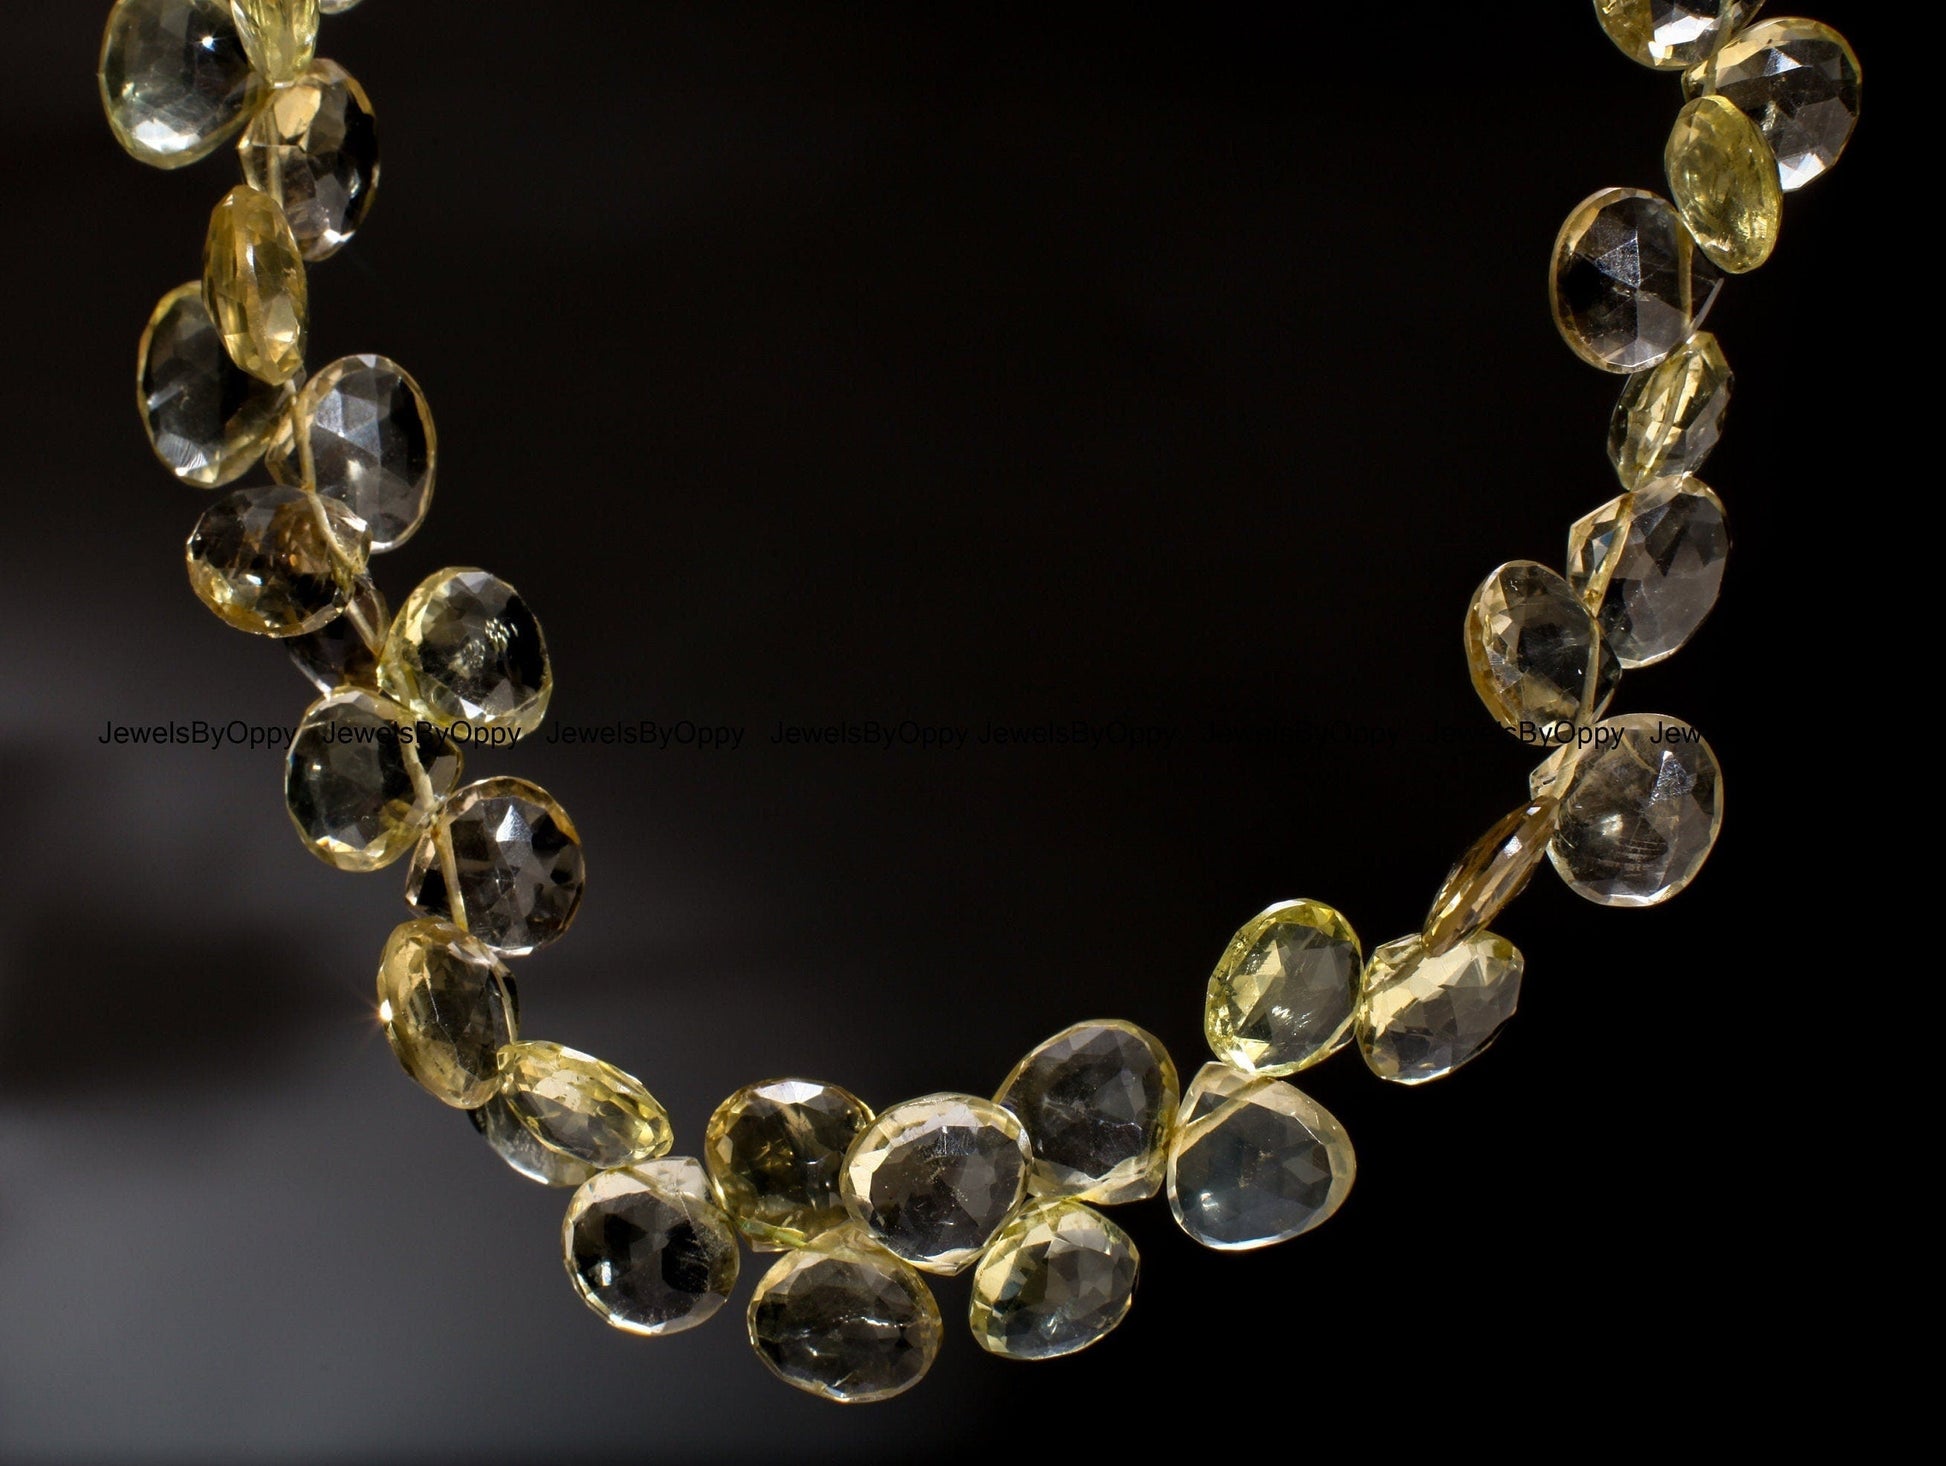 Lemon Quartz Faceted Teardrop 11-14mm, Natural AAA Lemon Quartz Gemstone Briolette Drop Beads Jewelry Making Necklace, Bracelet